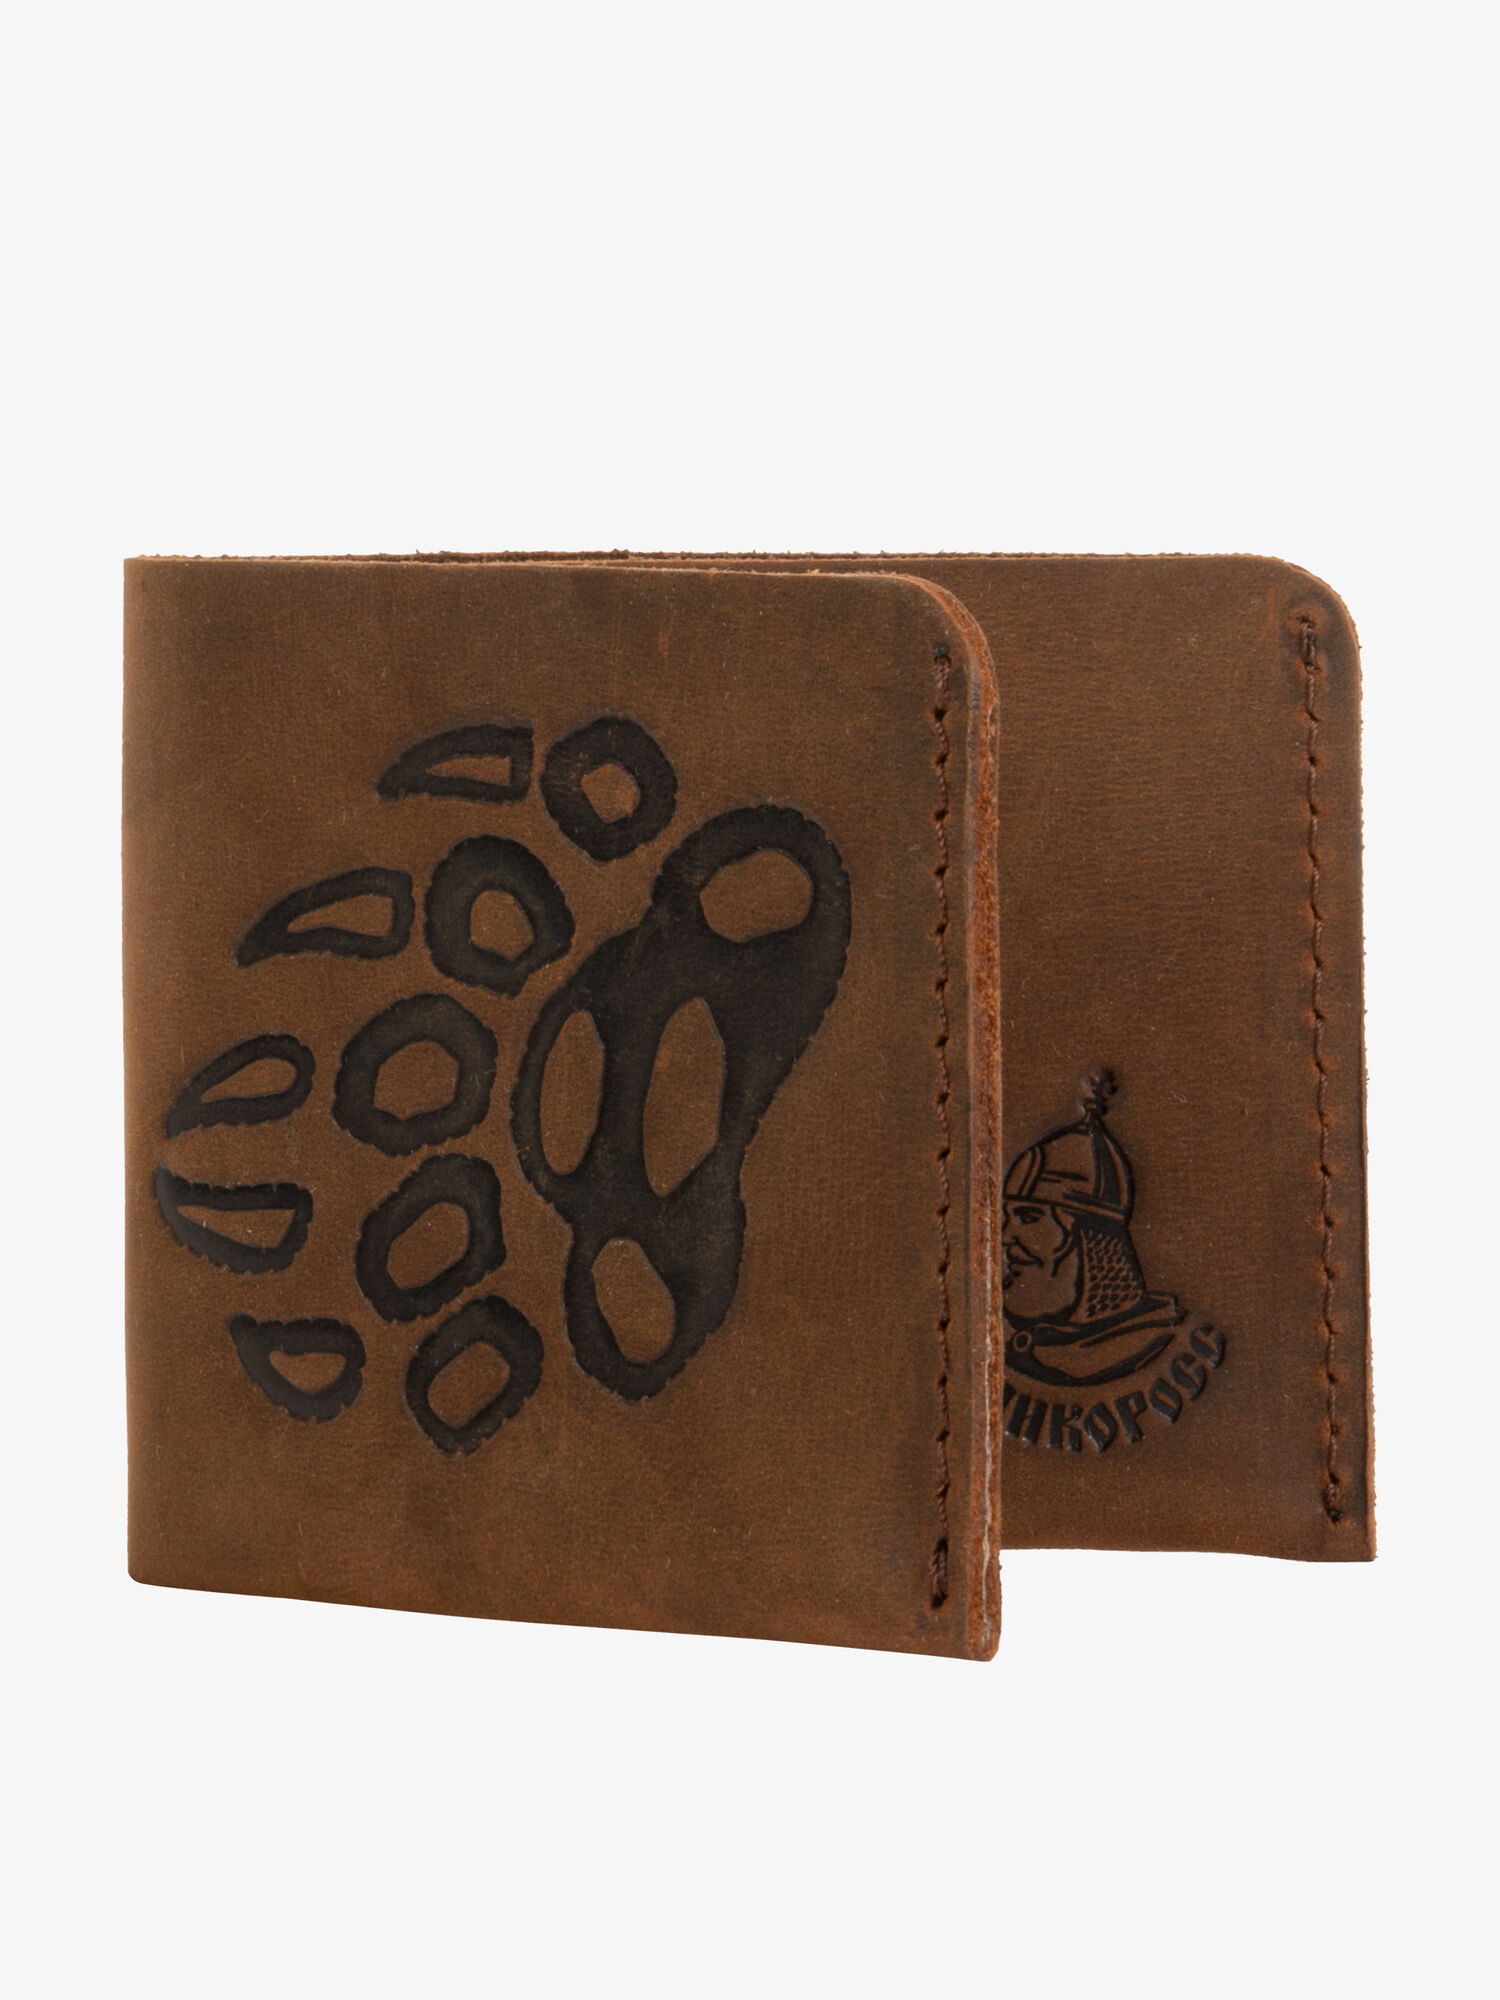 Бумажник-Компактный из натуральной кожи «Крейзи» бурого цвета